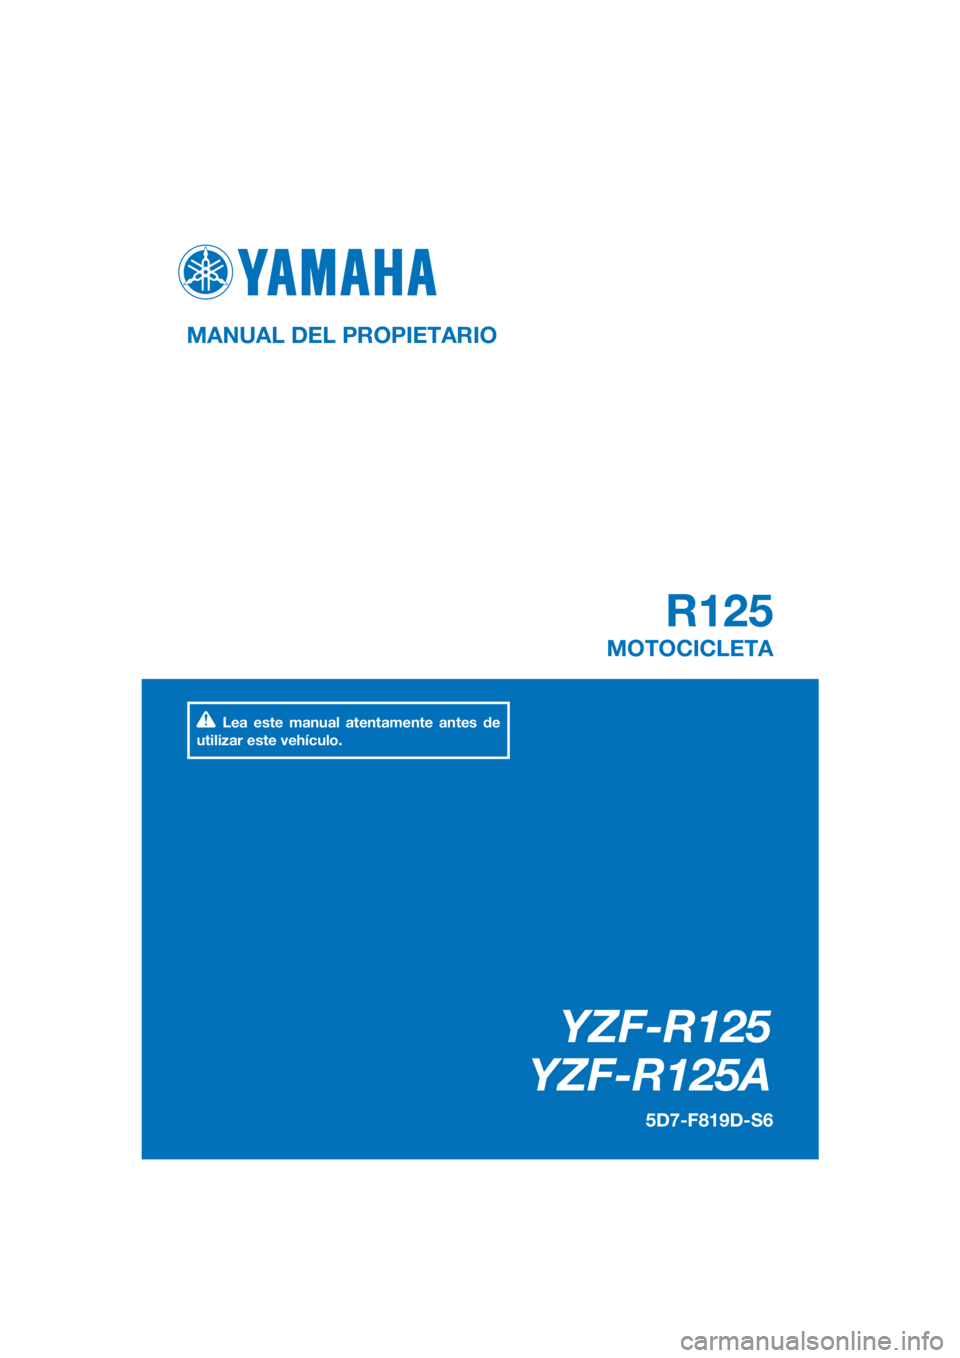 YAMAHA YZF-R125 2016  Manuale de Empleo (in Spanish) PANTONE285C
YZF-R125
YZF-R125A
R125
MANUAL DEL PROPIETARIO
5D7-F819D-S6
MOTOCICLETA
Lea este manual atentamente antes de 
utilizar este vehículo.
[Spanish  (S)] 